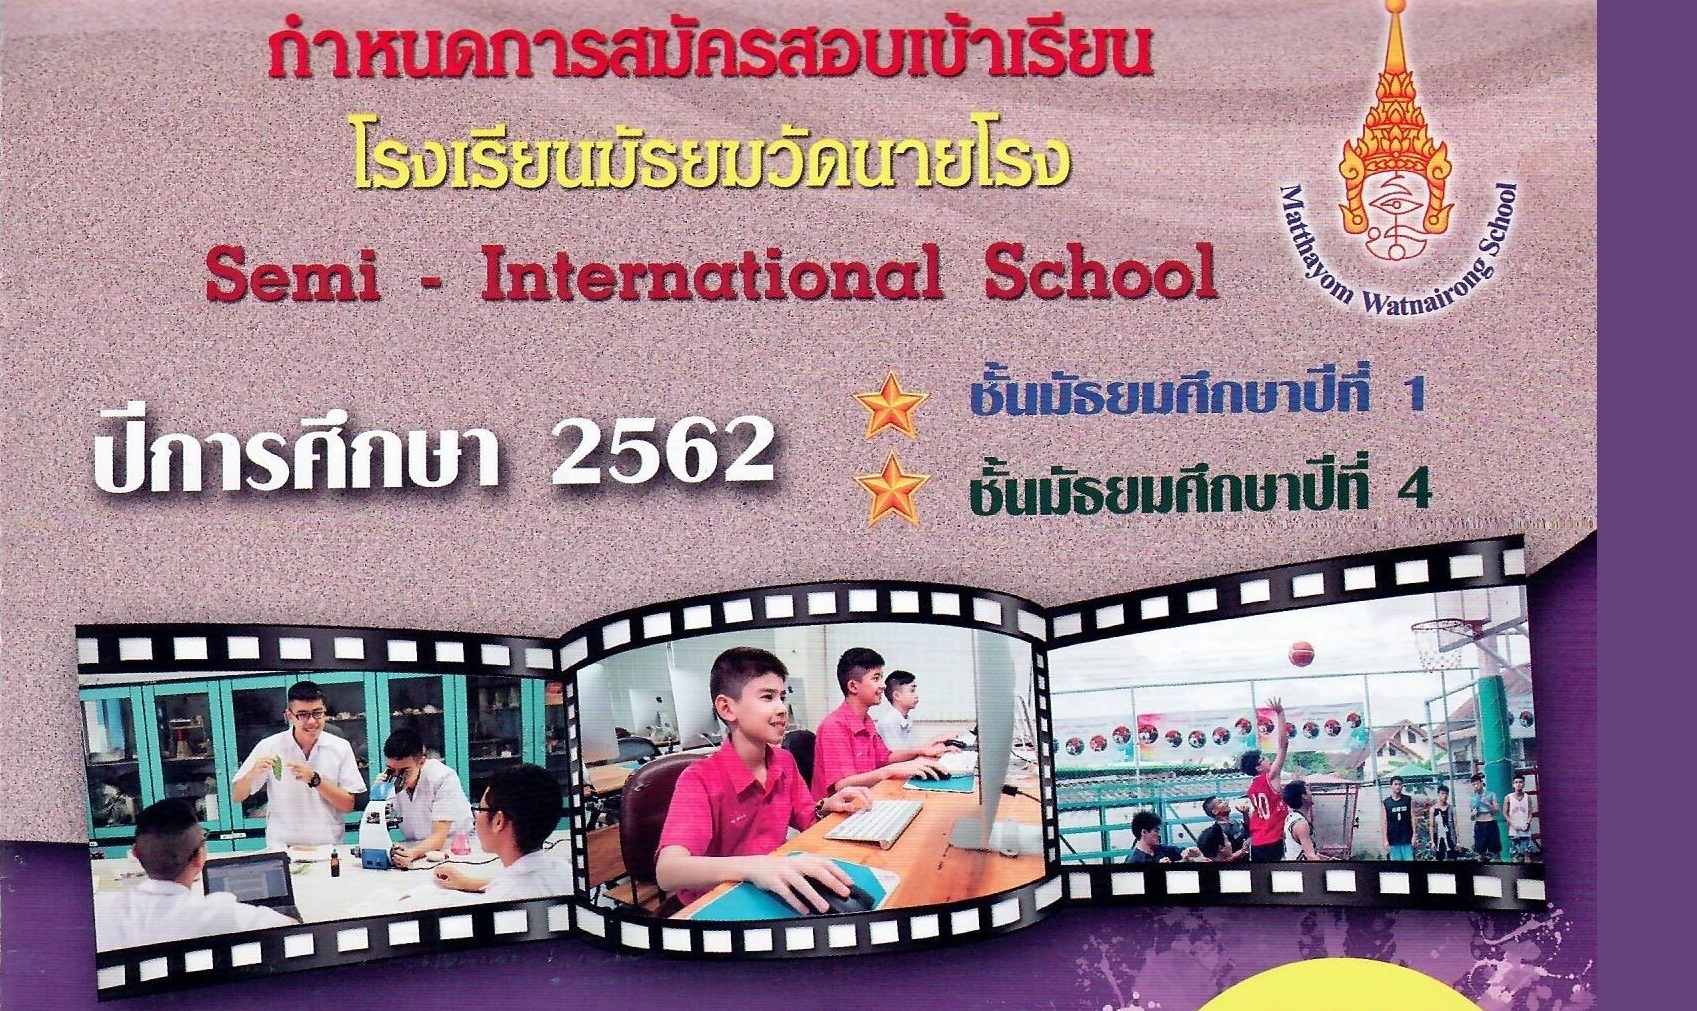 กำหนดการและขั้นตอนการสมัครสอบเข้าเรียนโรงเรียนมัธยมวัดนายโรง (English Program, Mini English Program) ประจำปีการศึกษา 2562